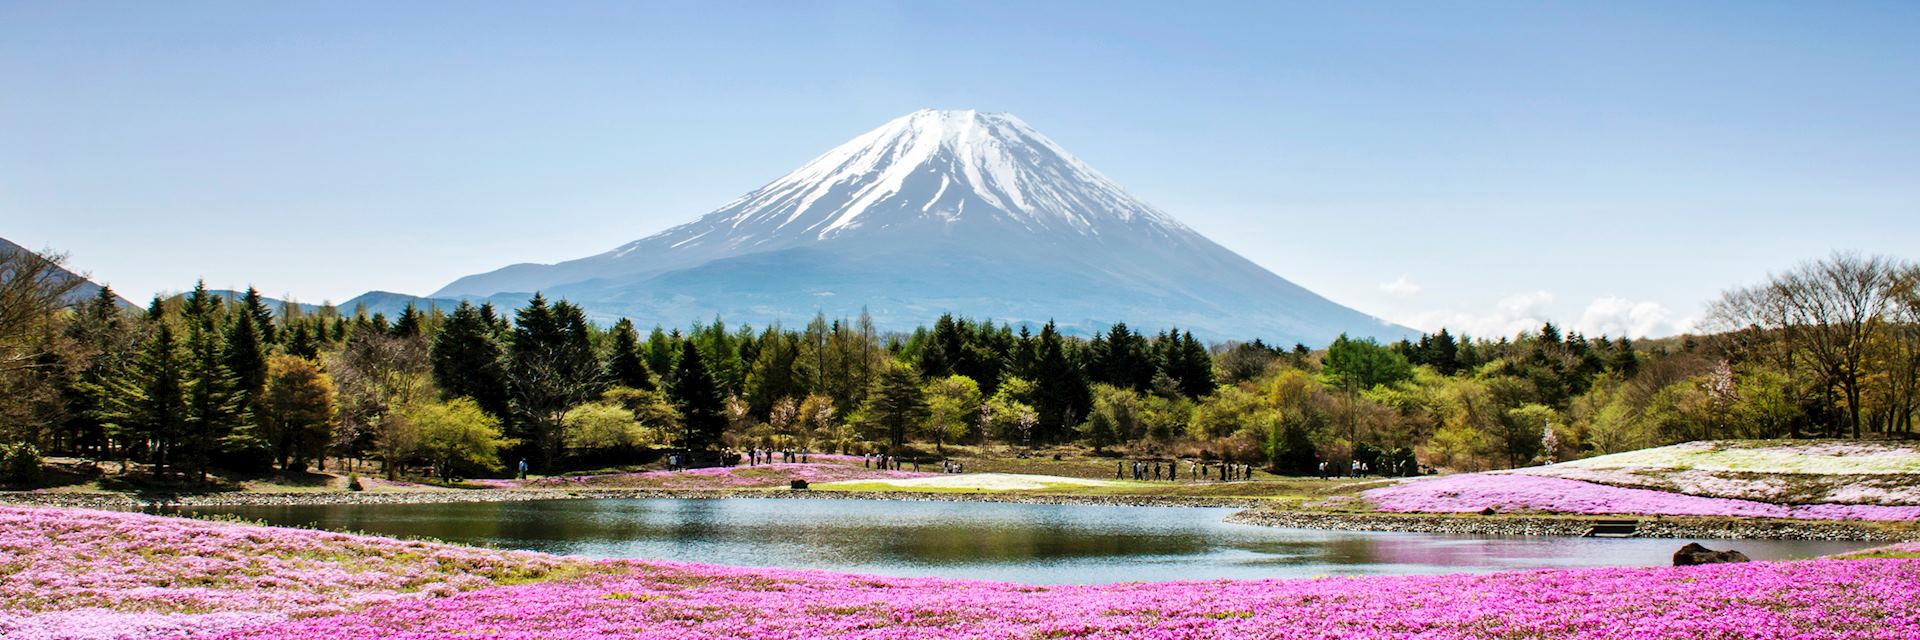 kelionė į japoniją, japonijos kelionės, egzotinės kelionės, pažintinės kelionės